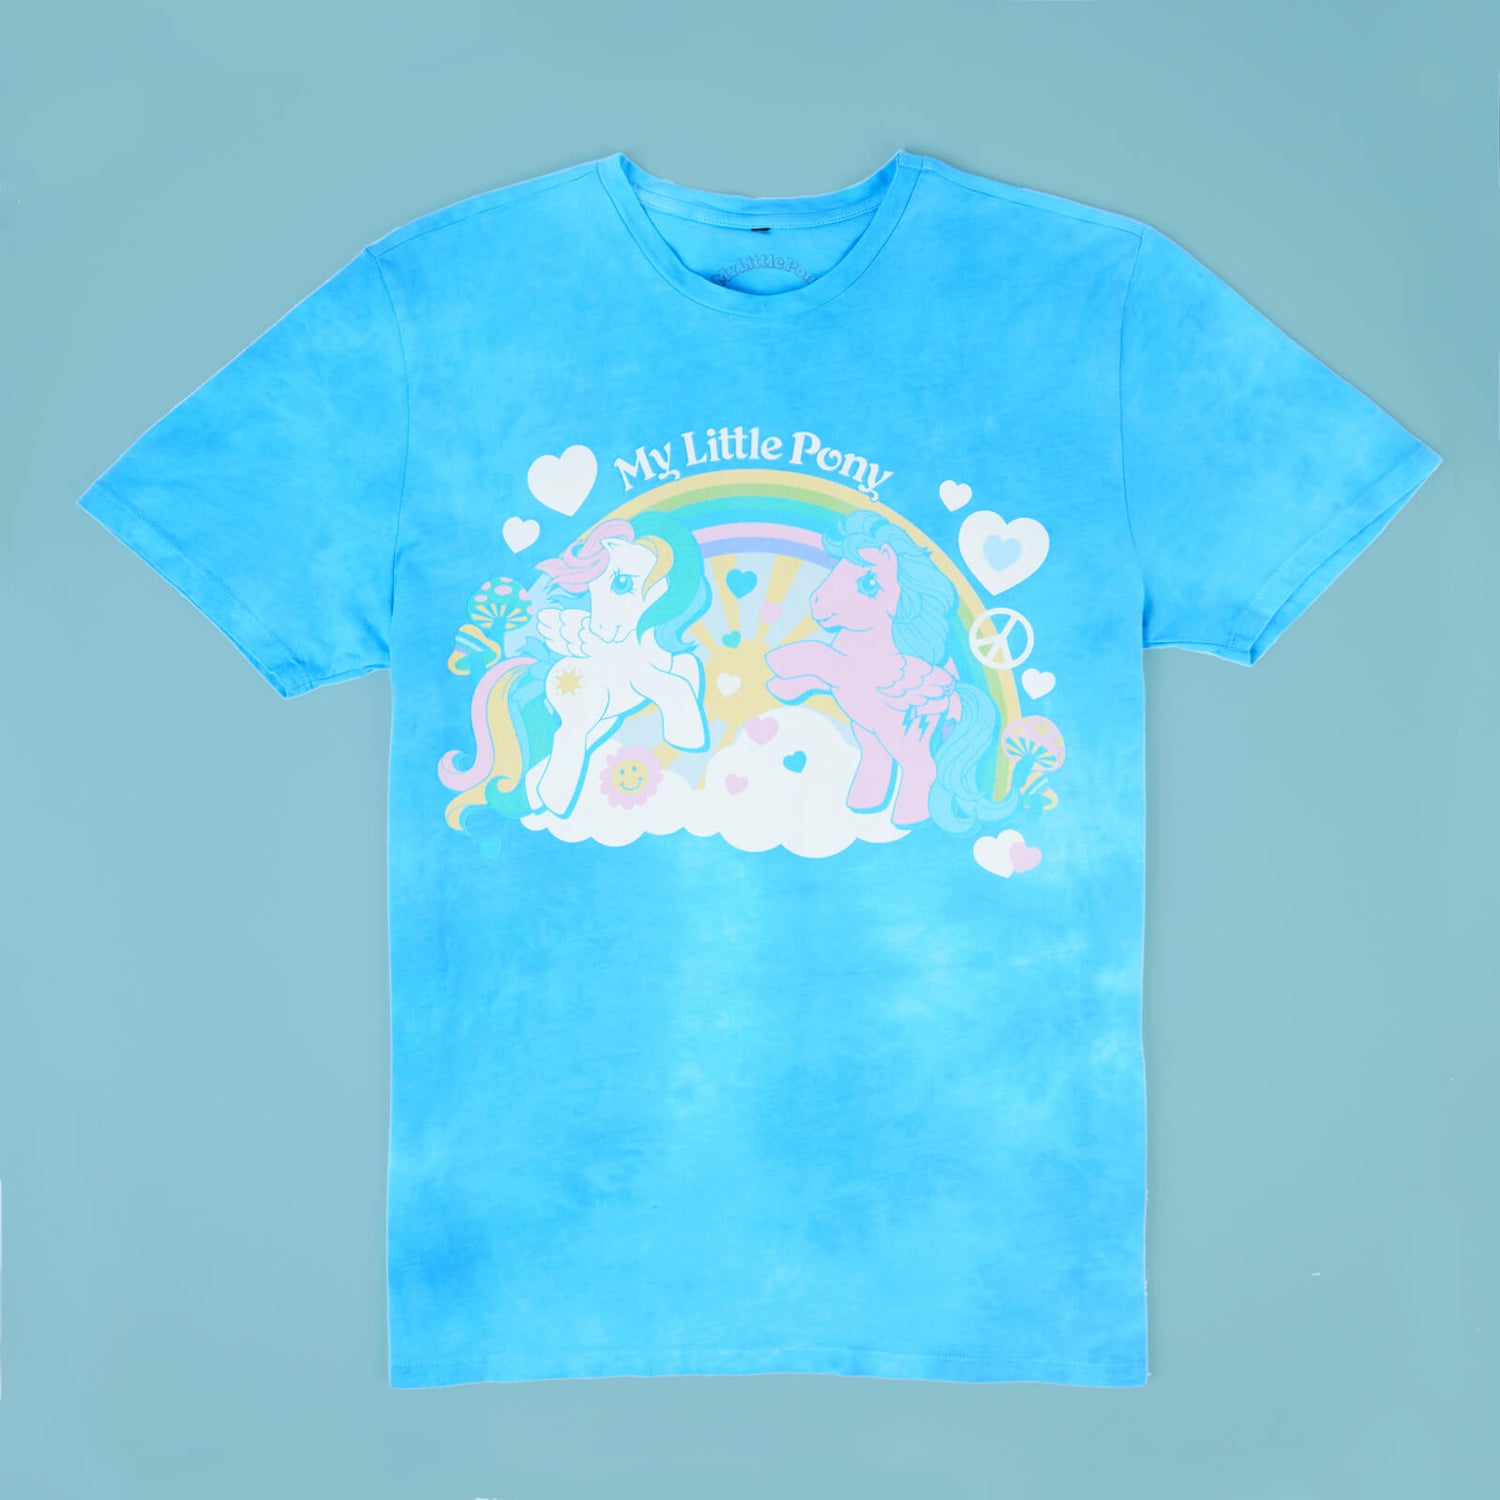 My Little Pony Retro Rainbow Unisex T-Shirt - Turquoise Tie Dye